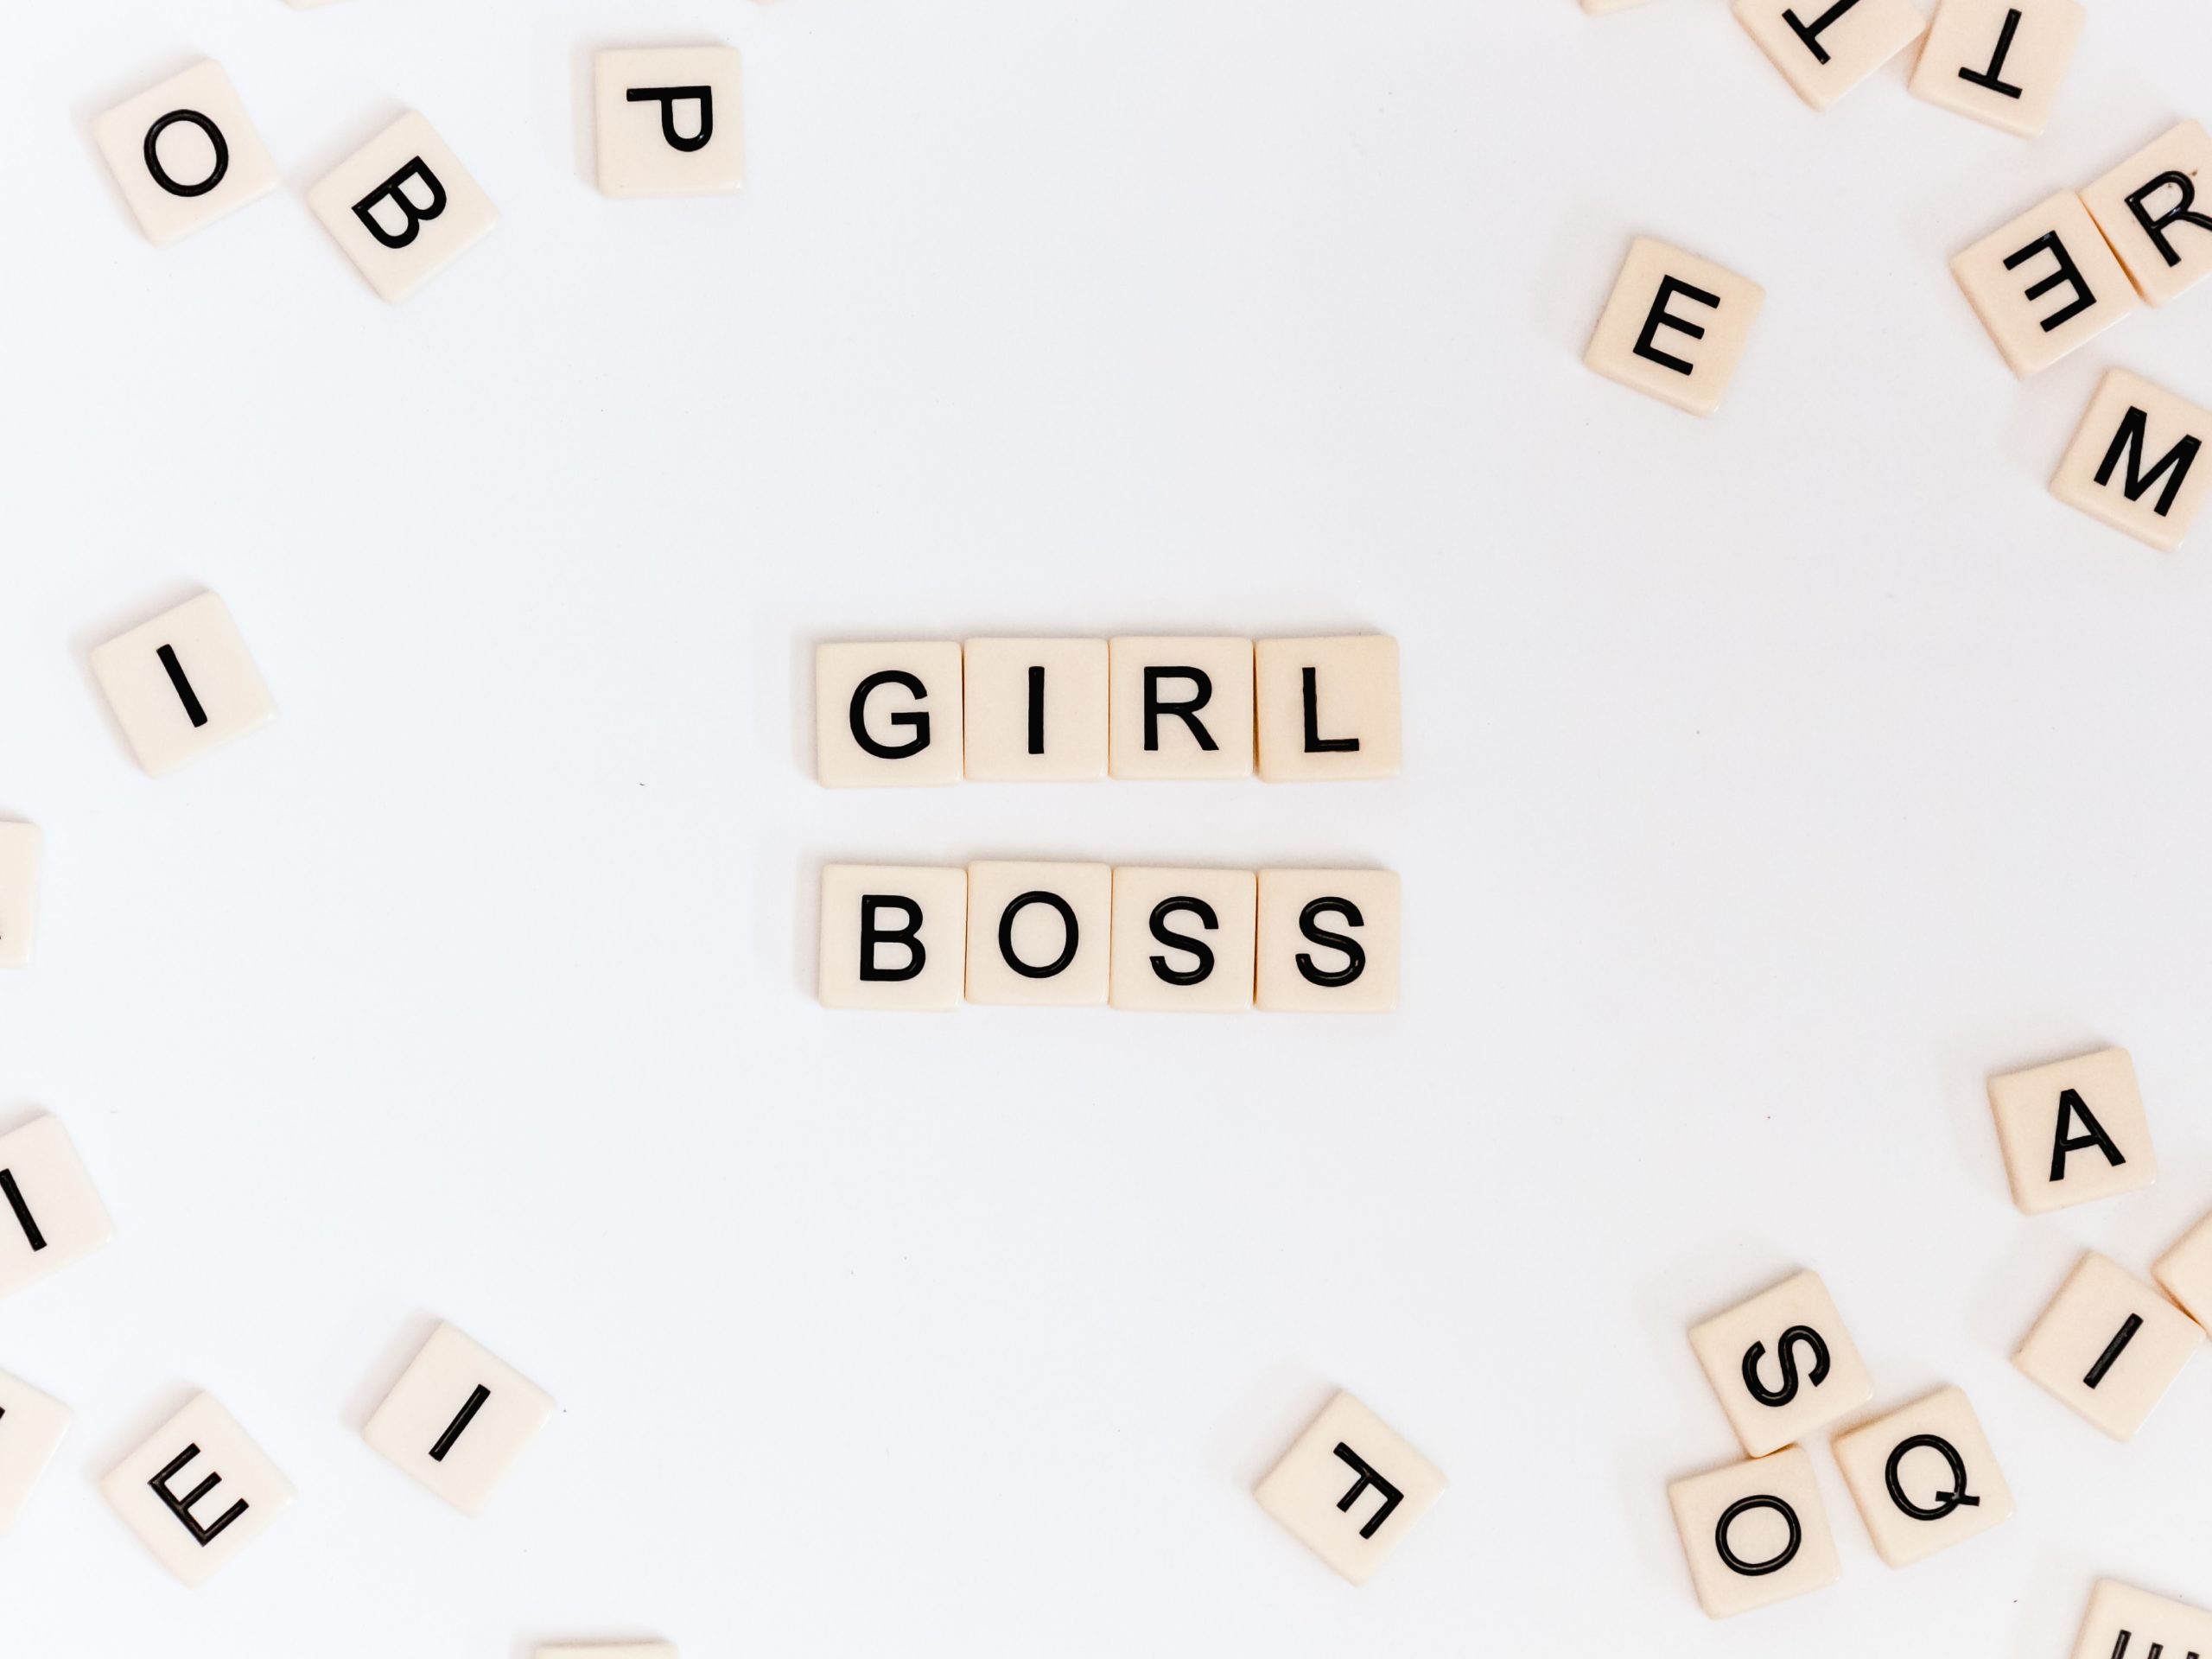 zusammengewürfelte Buchstaben, die Girl Boss ergeben